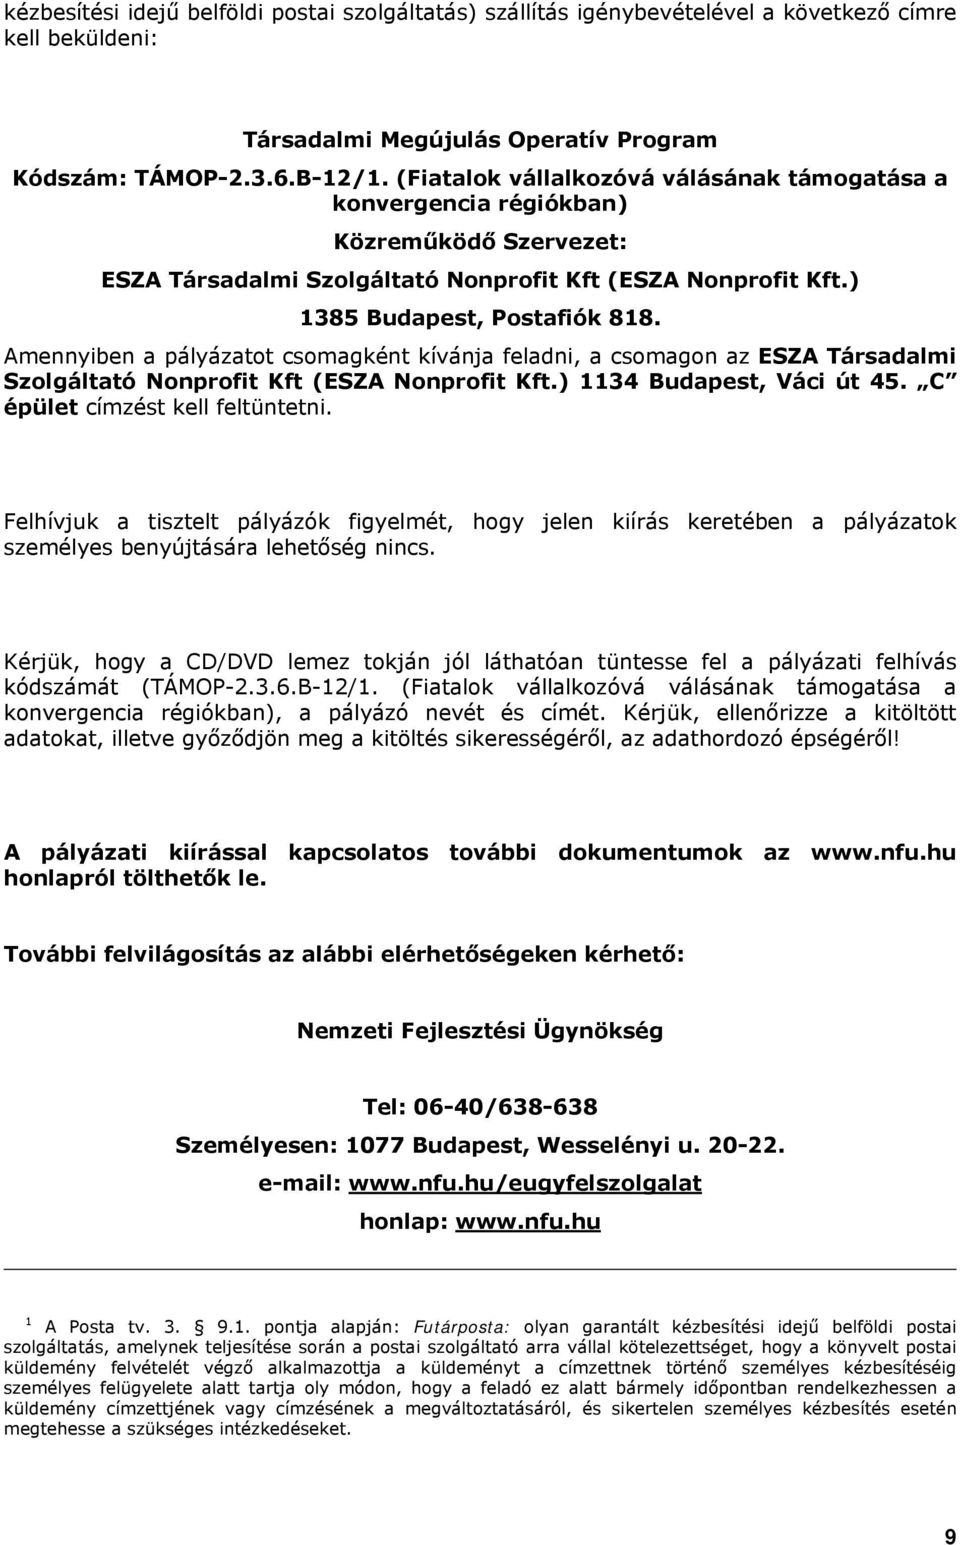 Amennyiben a pályázatot csomagként kívánja feladni, a csomagon az ESZA Társadalmi Szolgáltató Nonprofit Kft (ESZA Nonprofit Kft.) 1134 Budapest, Váci út 45. C épület címzést kell feltüntetni.